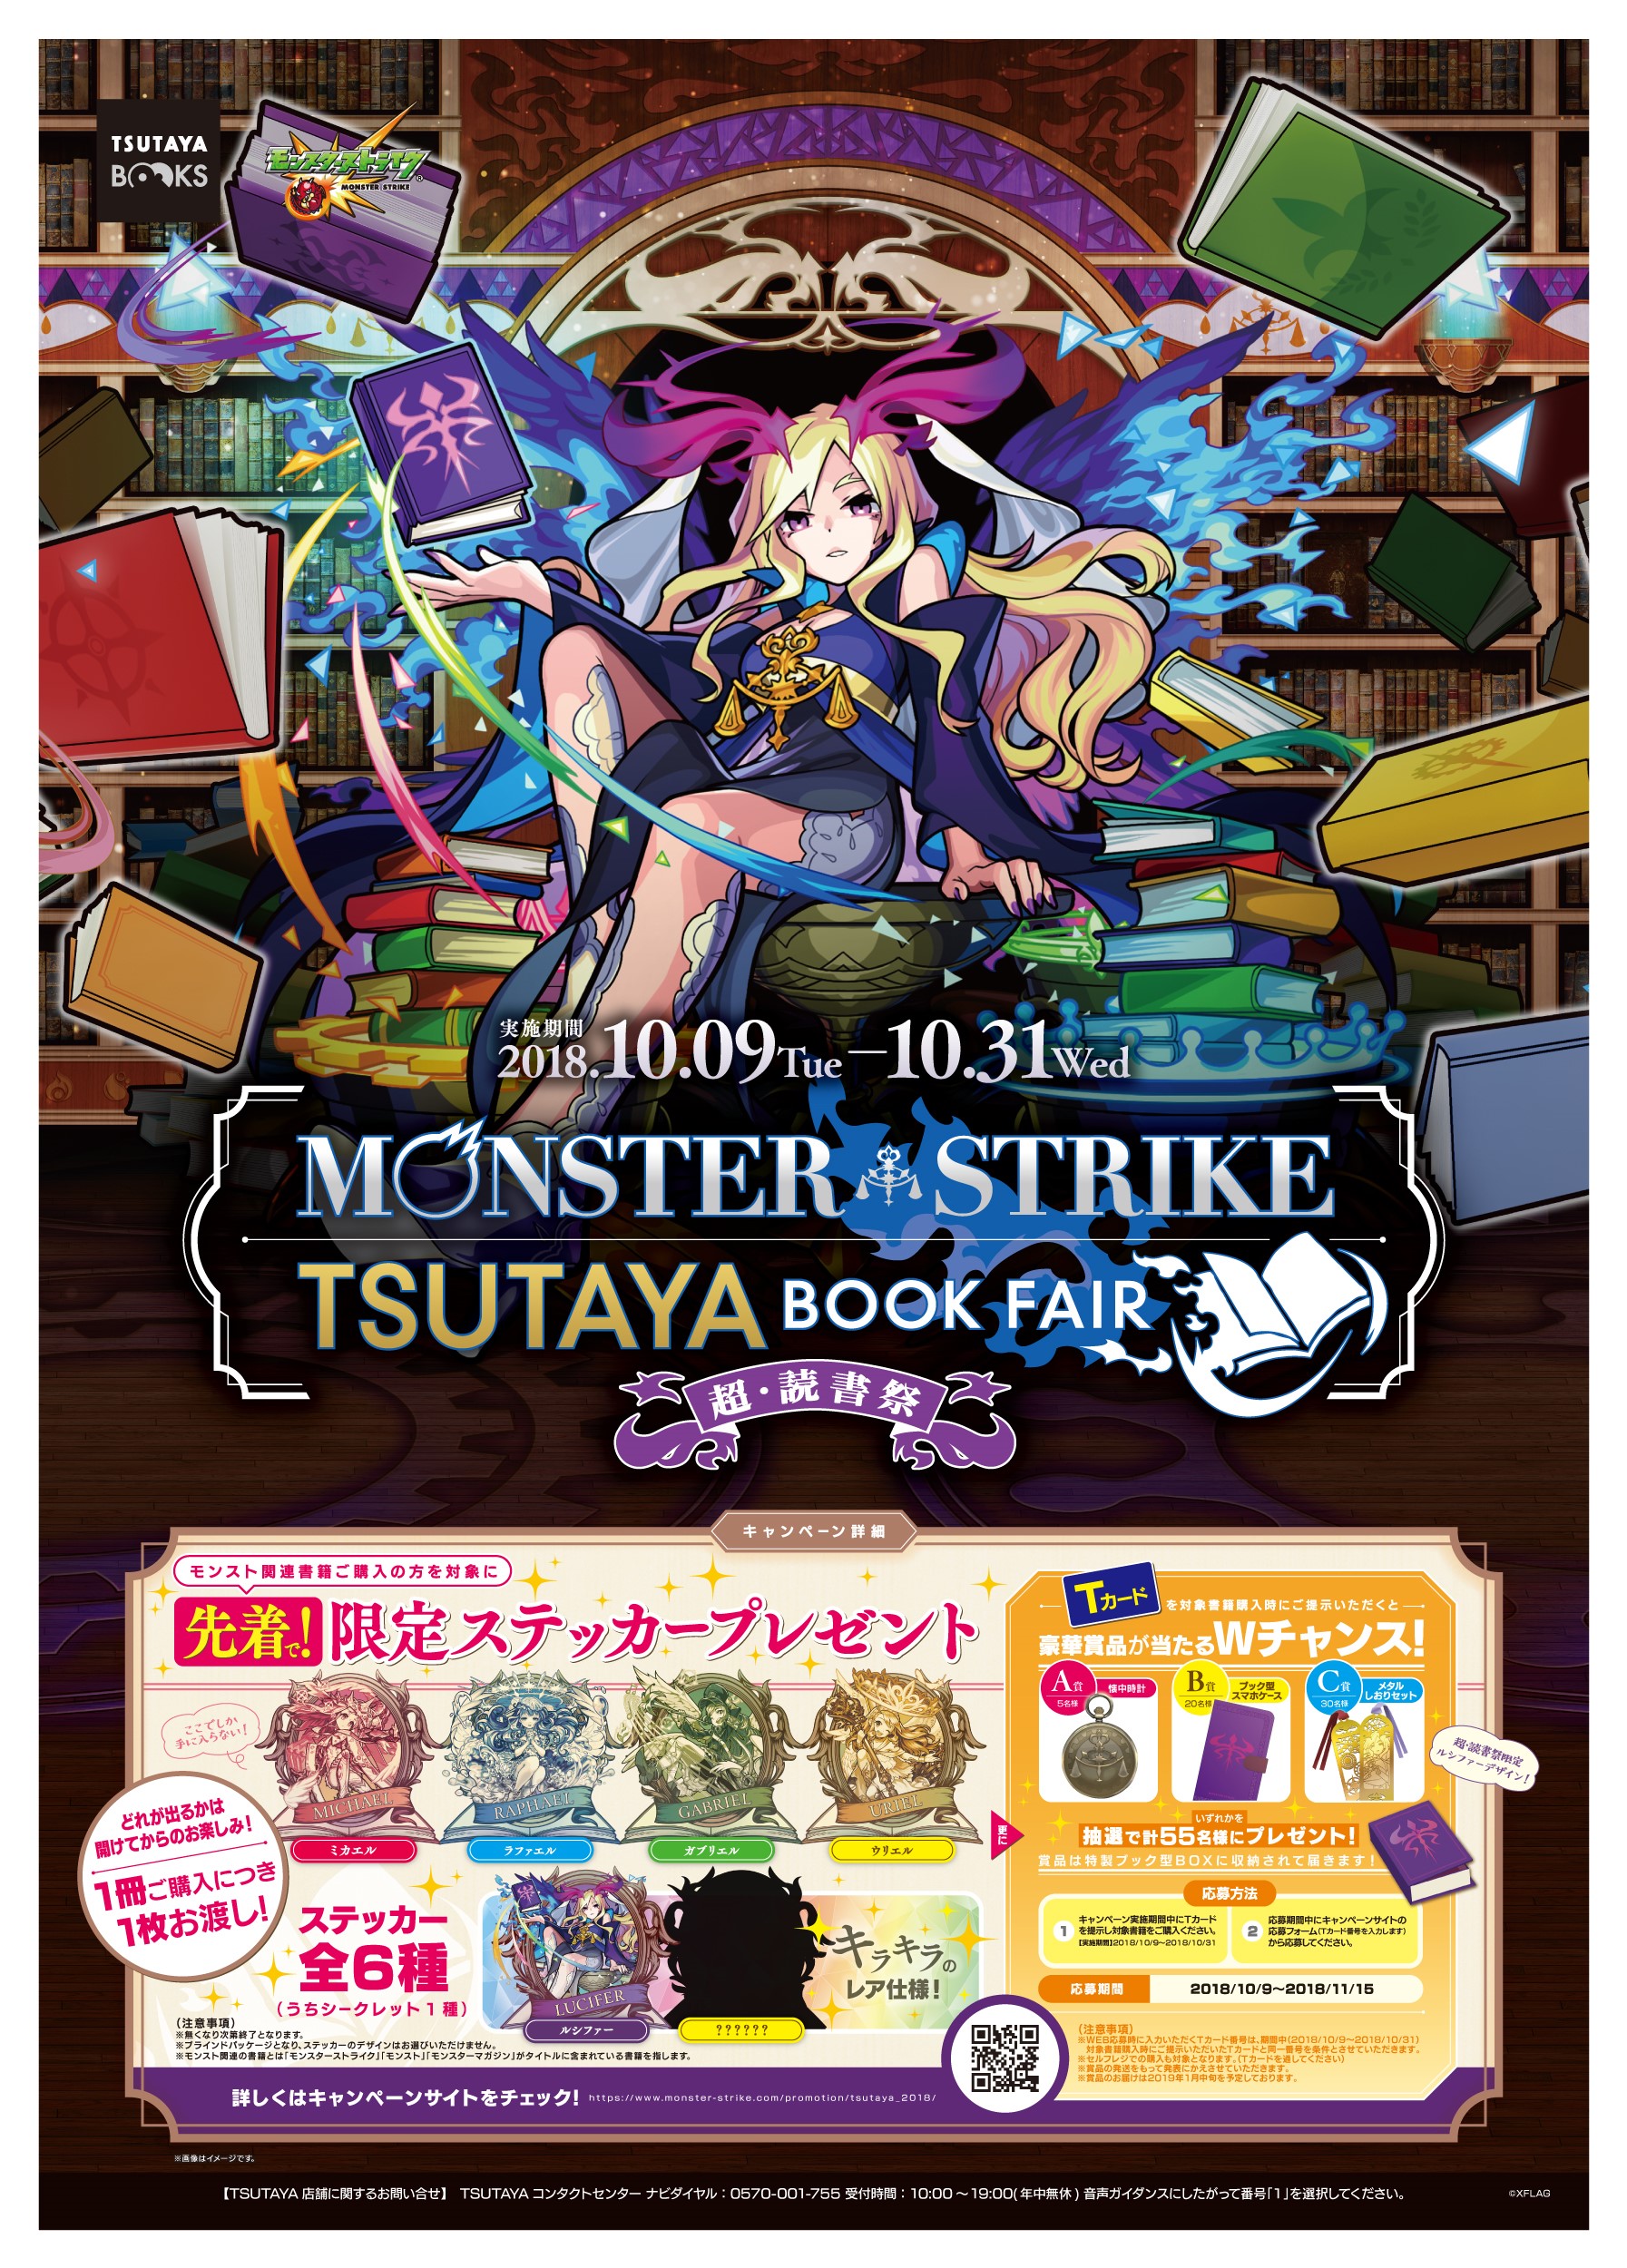 モンスターストライク 5周年記念 モンスターストライク Tsutayaブックフェア 超 読書祭 開催 Ccc 蔦屋書店カンパニーのプレスリリース